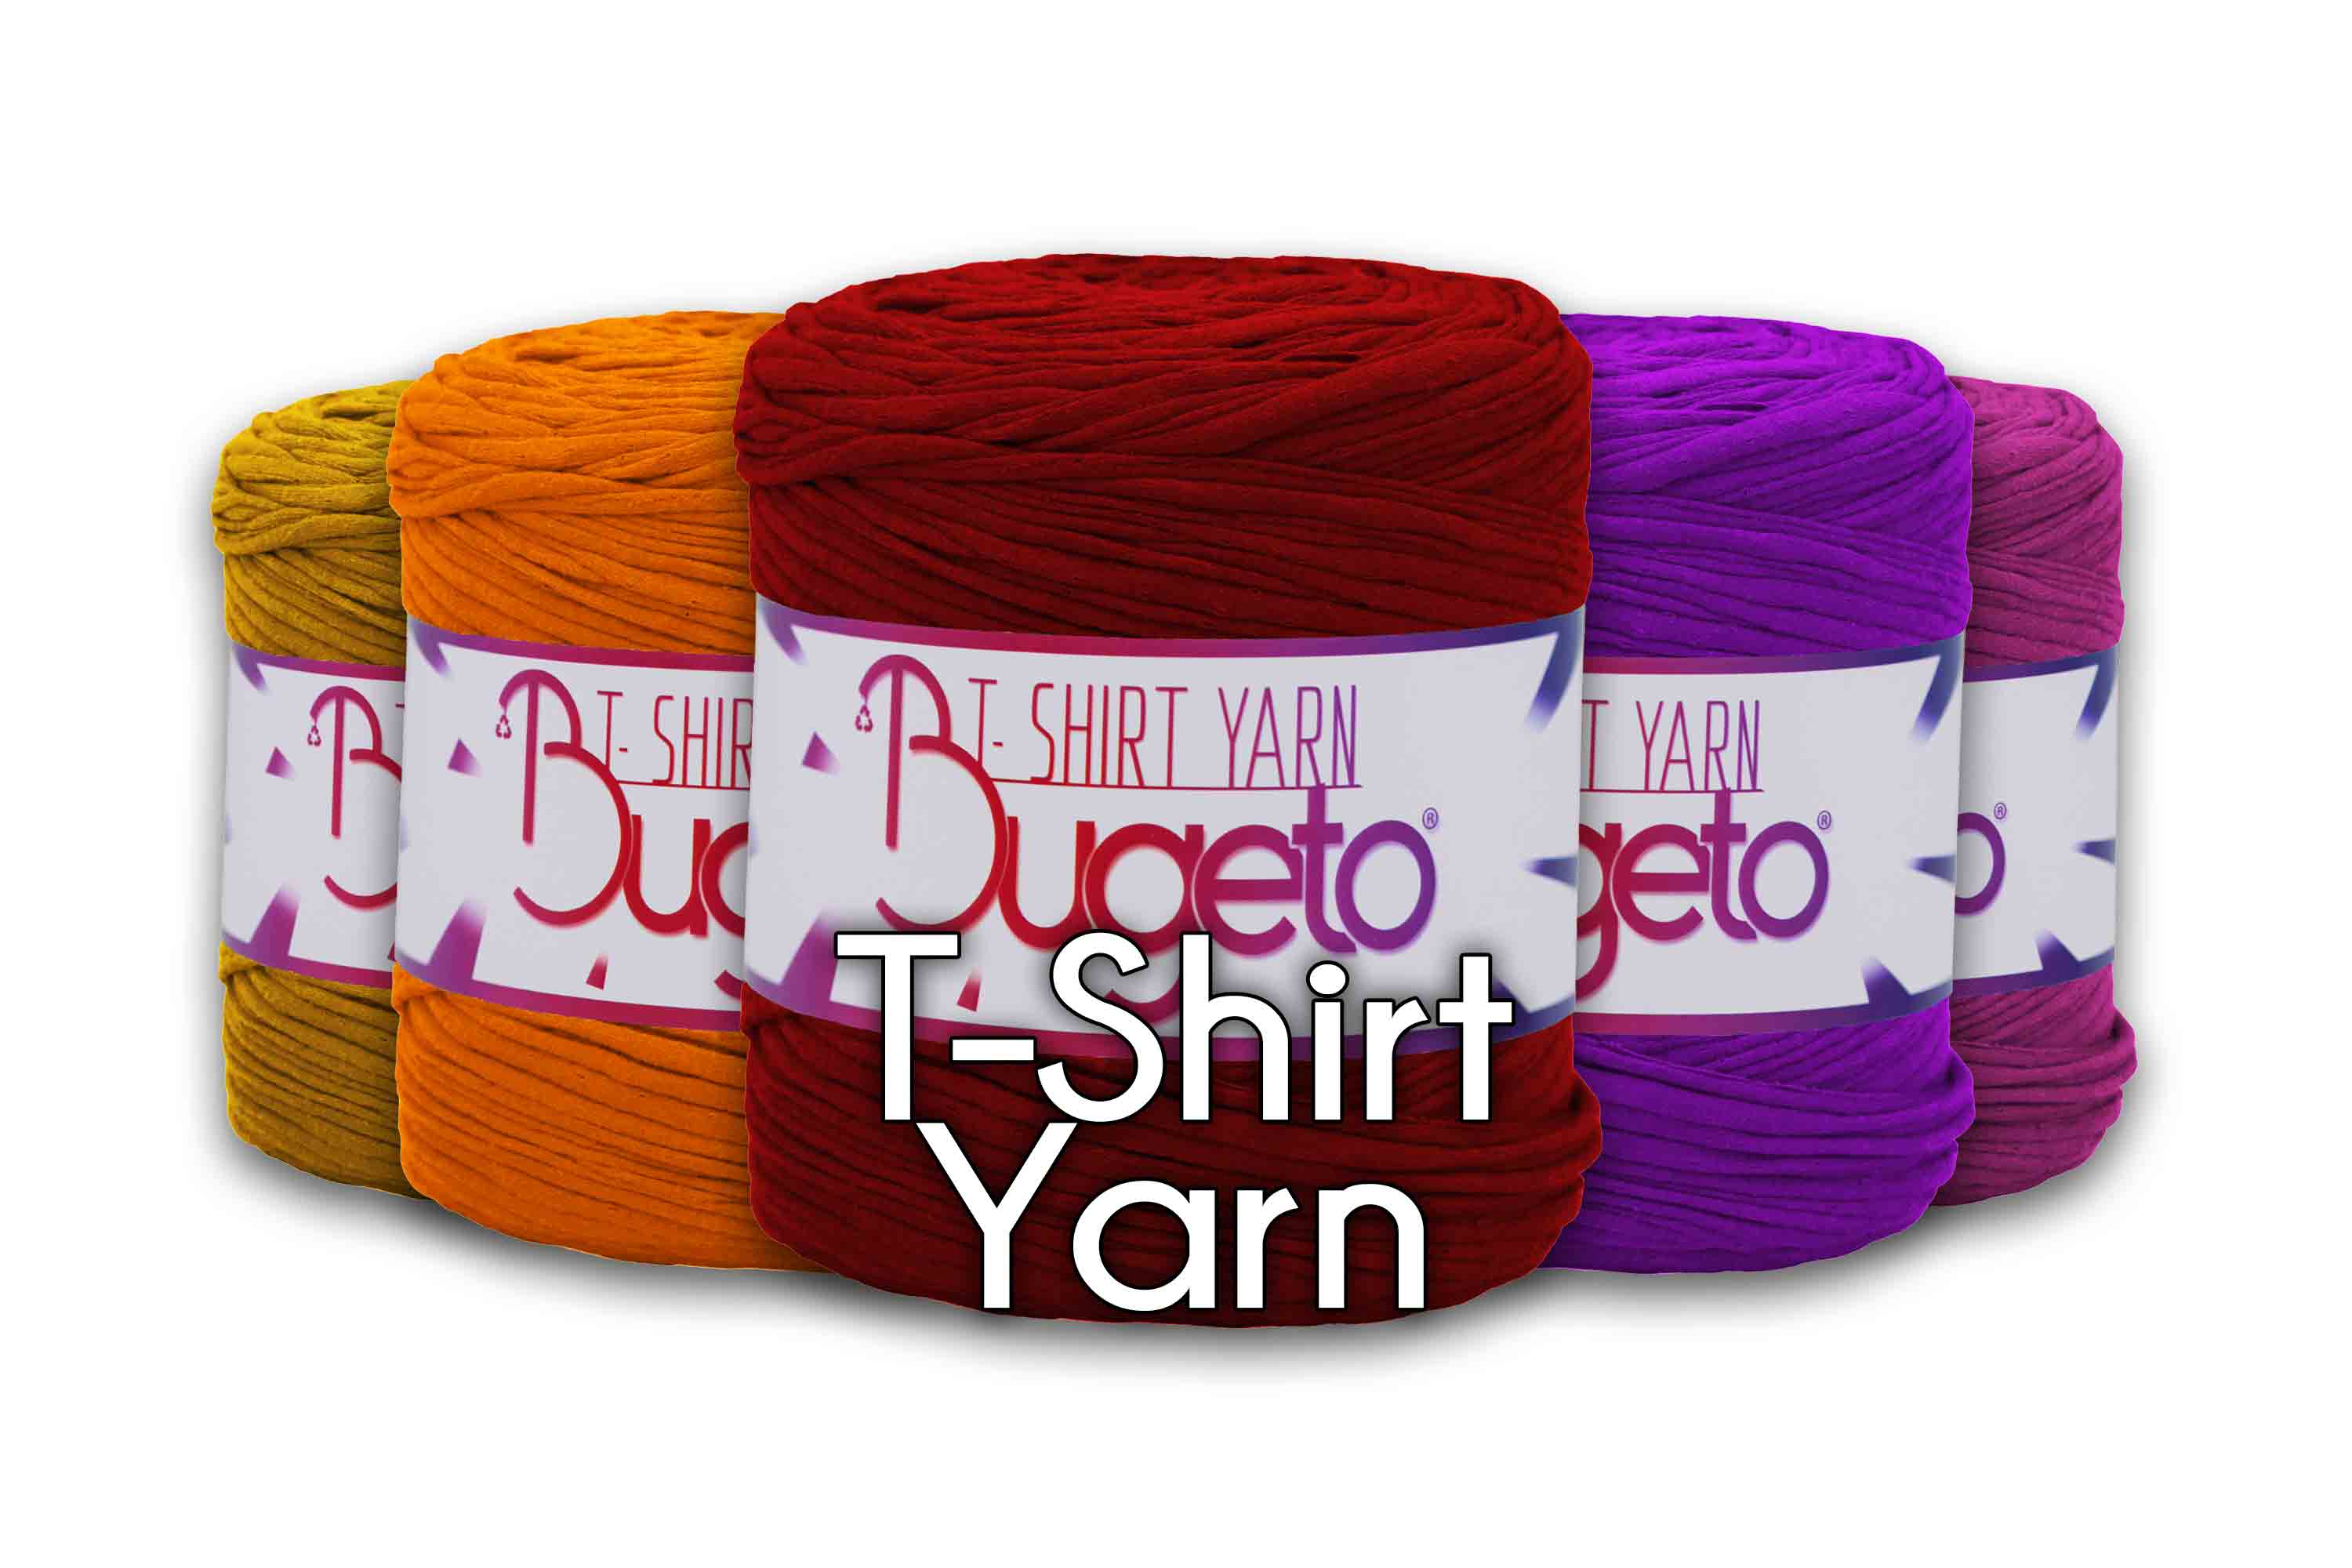 tshirt yarns recycled yarn colorfull yarns tshirt yarn bugeto yarn